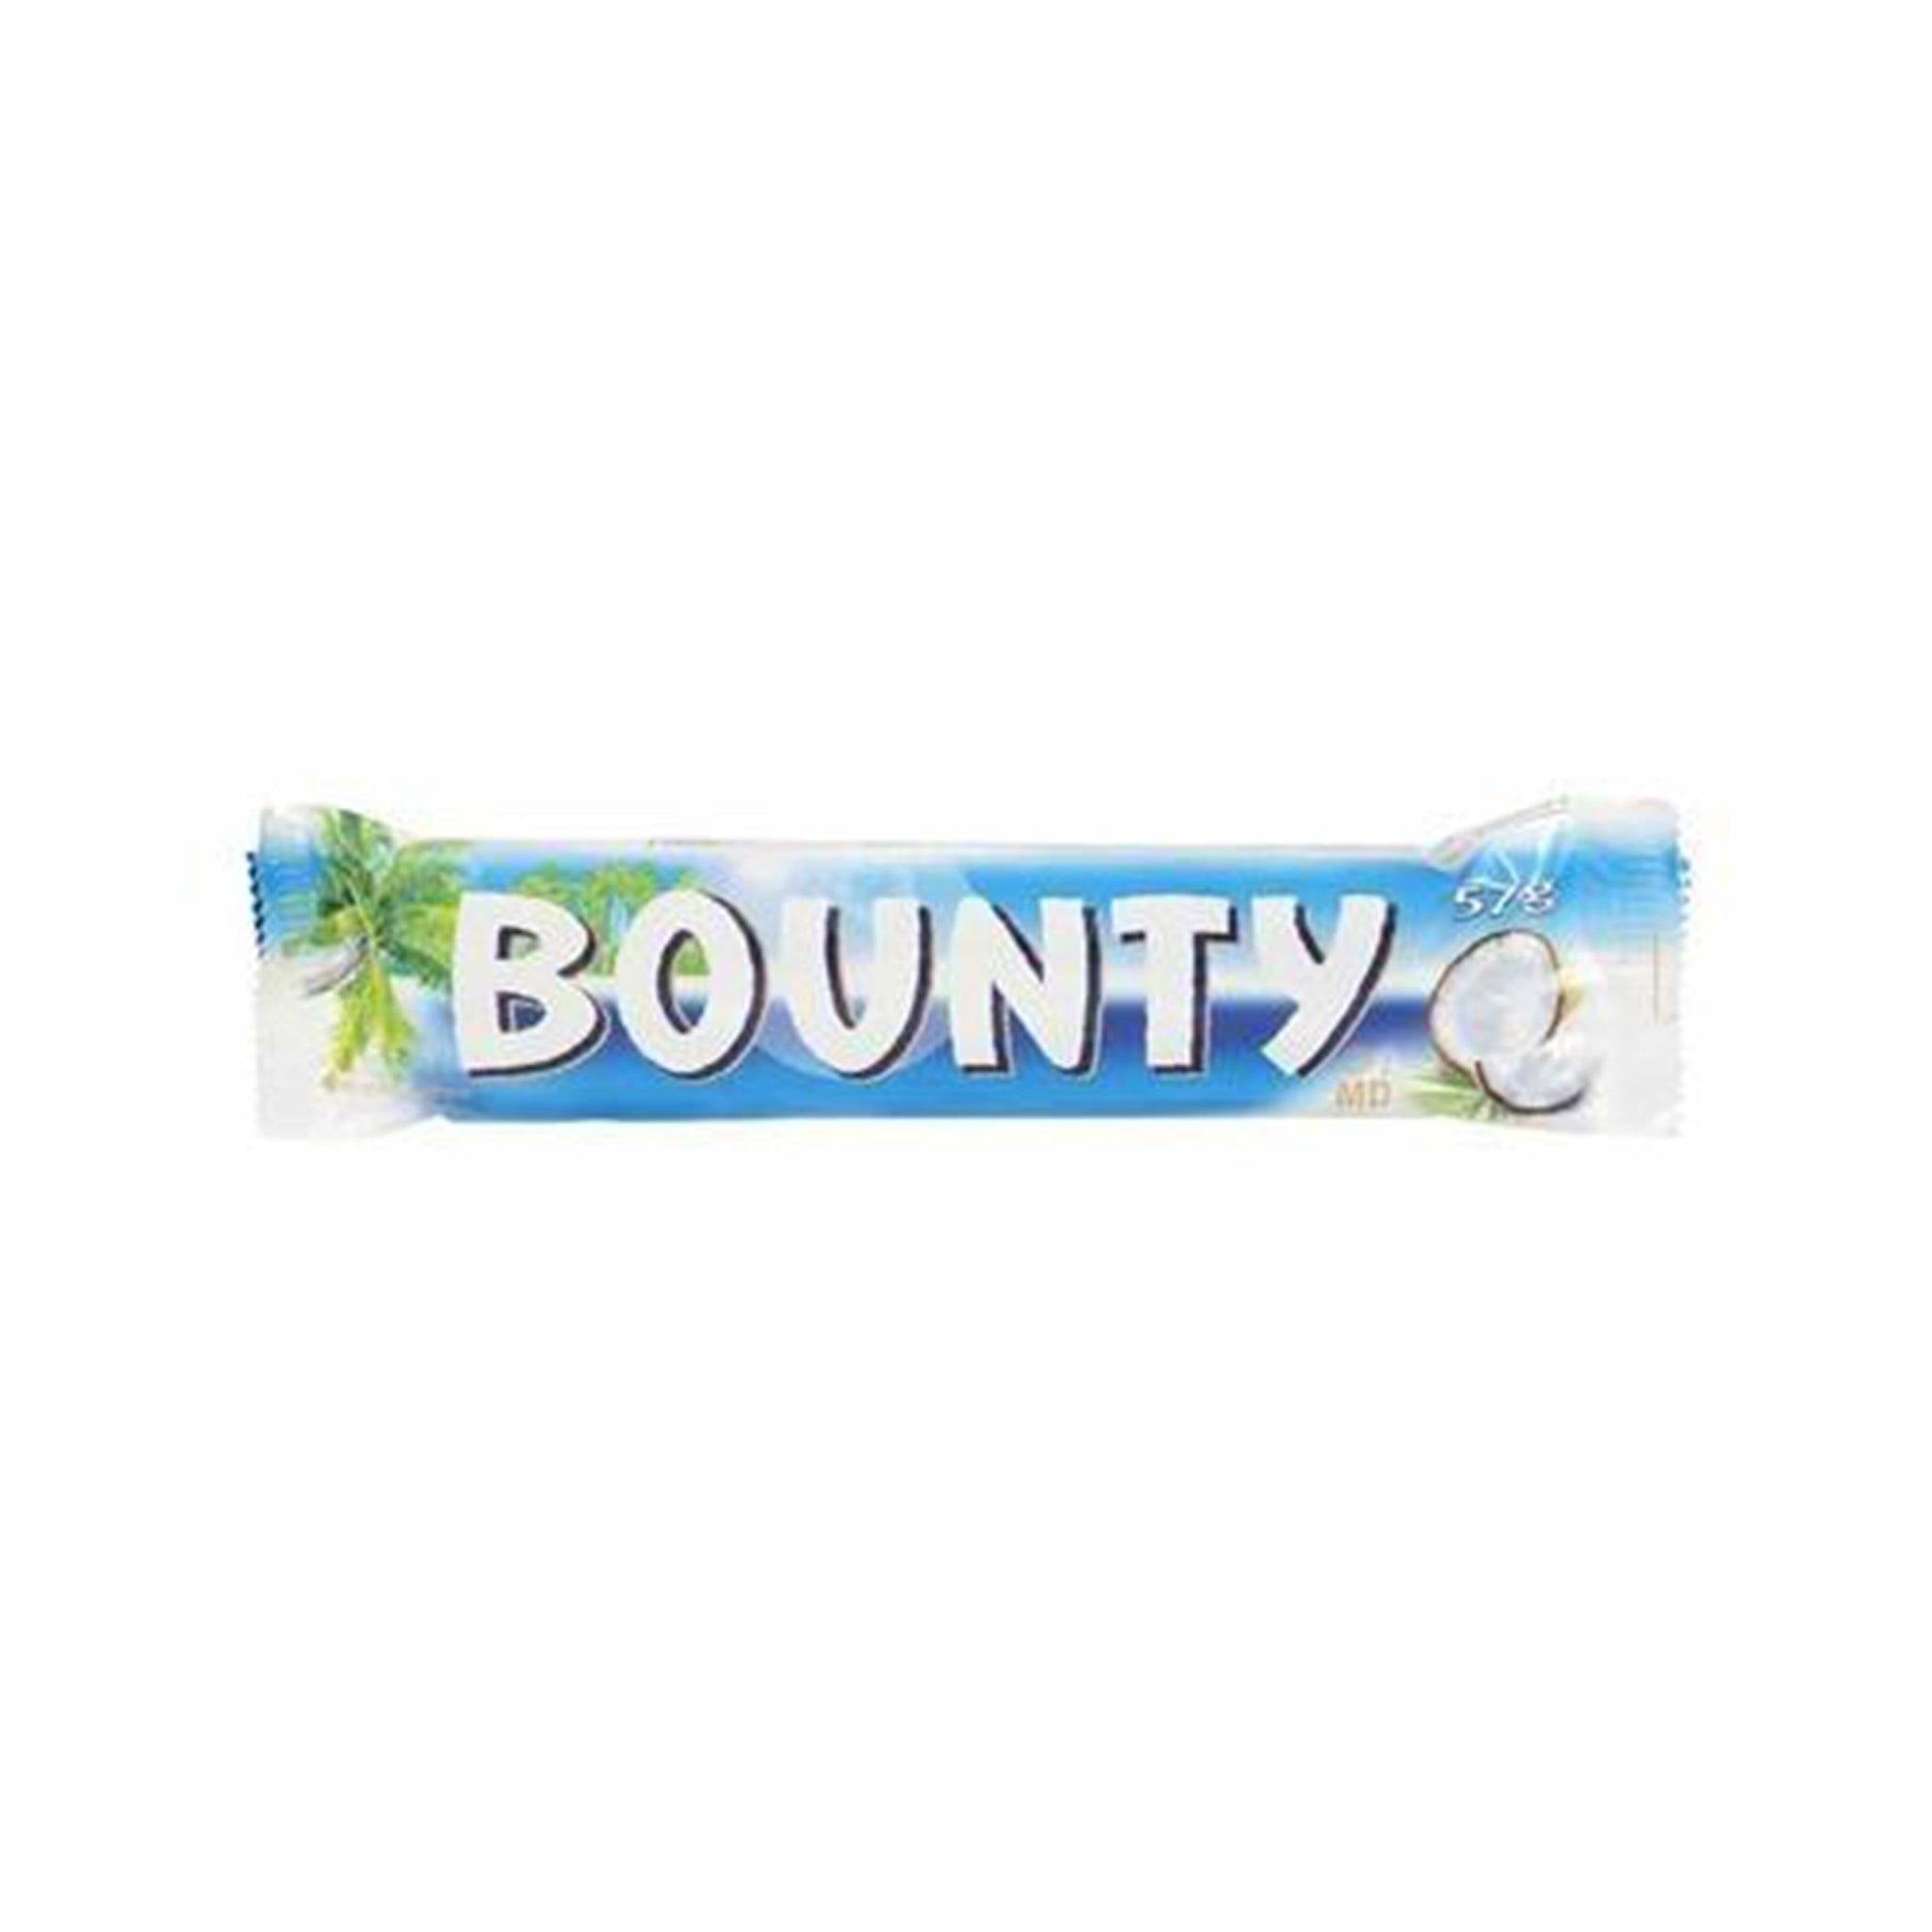 Bounty - Sweet Exotics